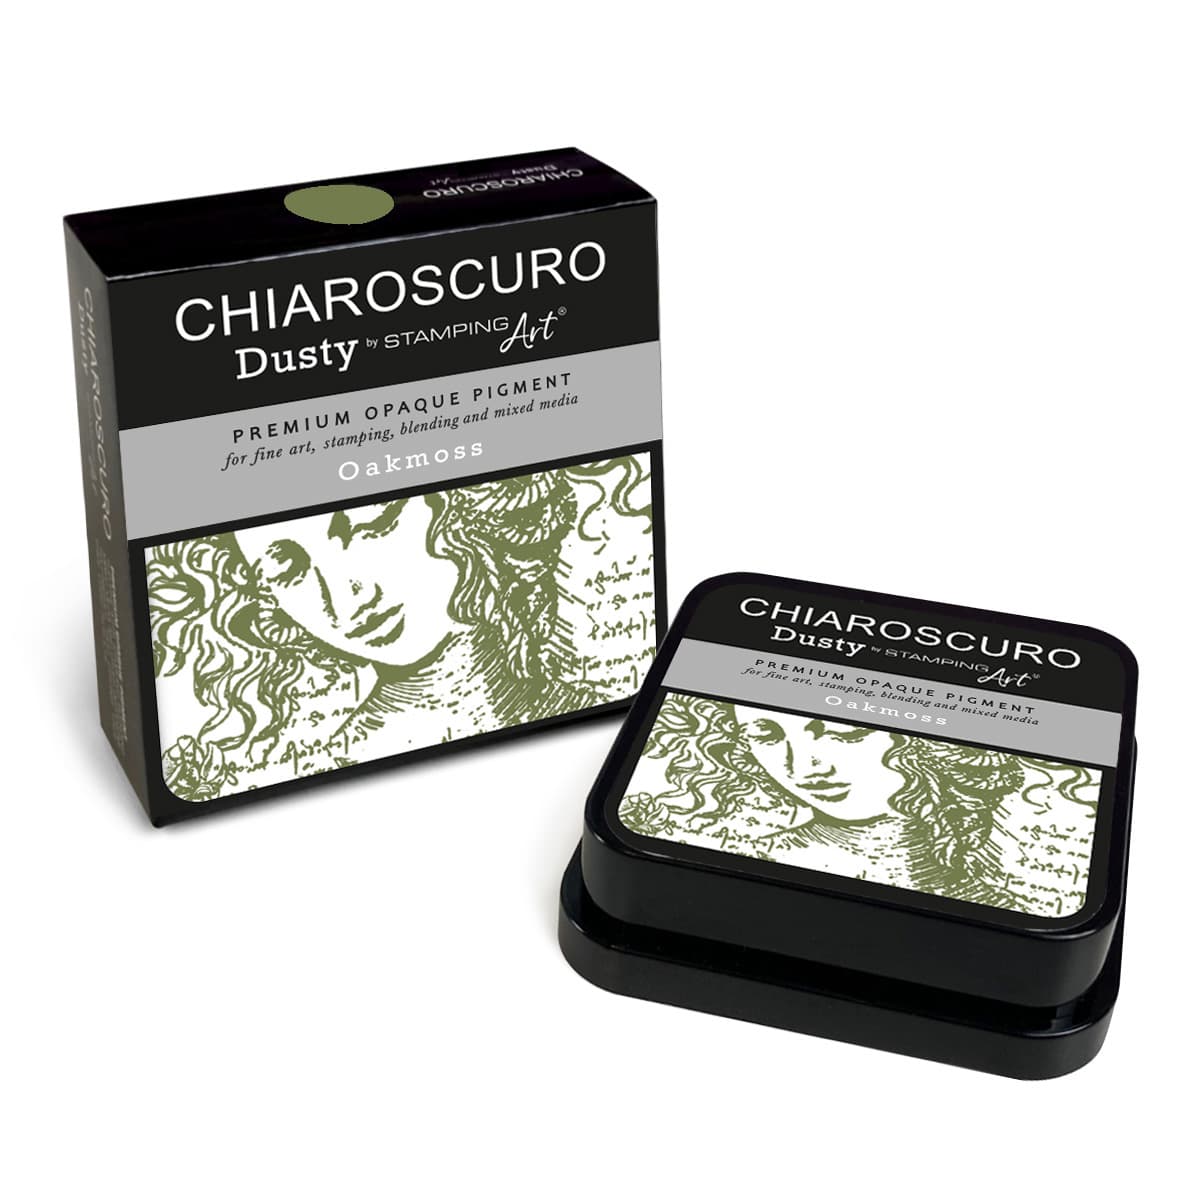 Oakmoss Chiaroscuro Dusty Ink Pad